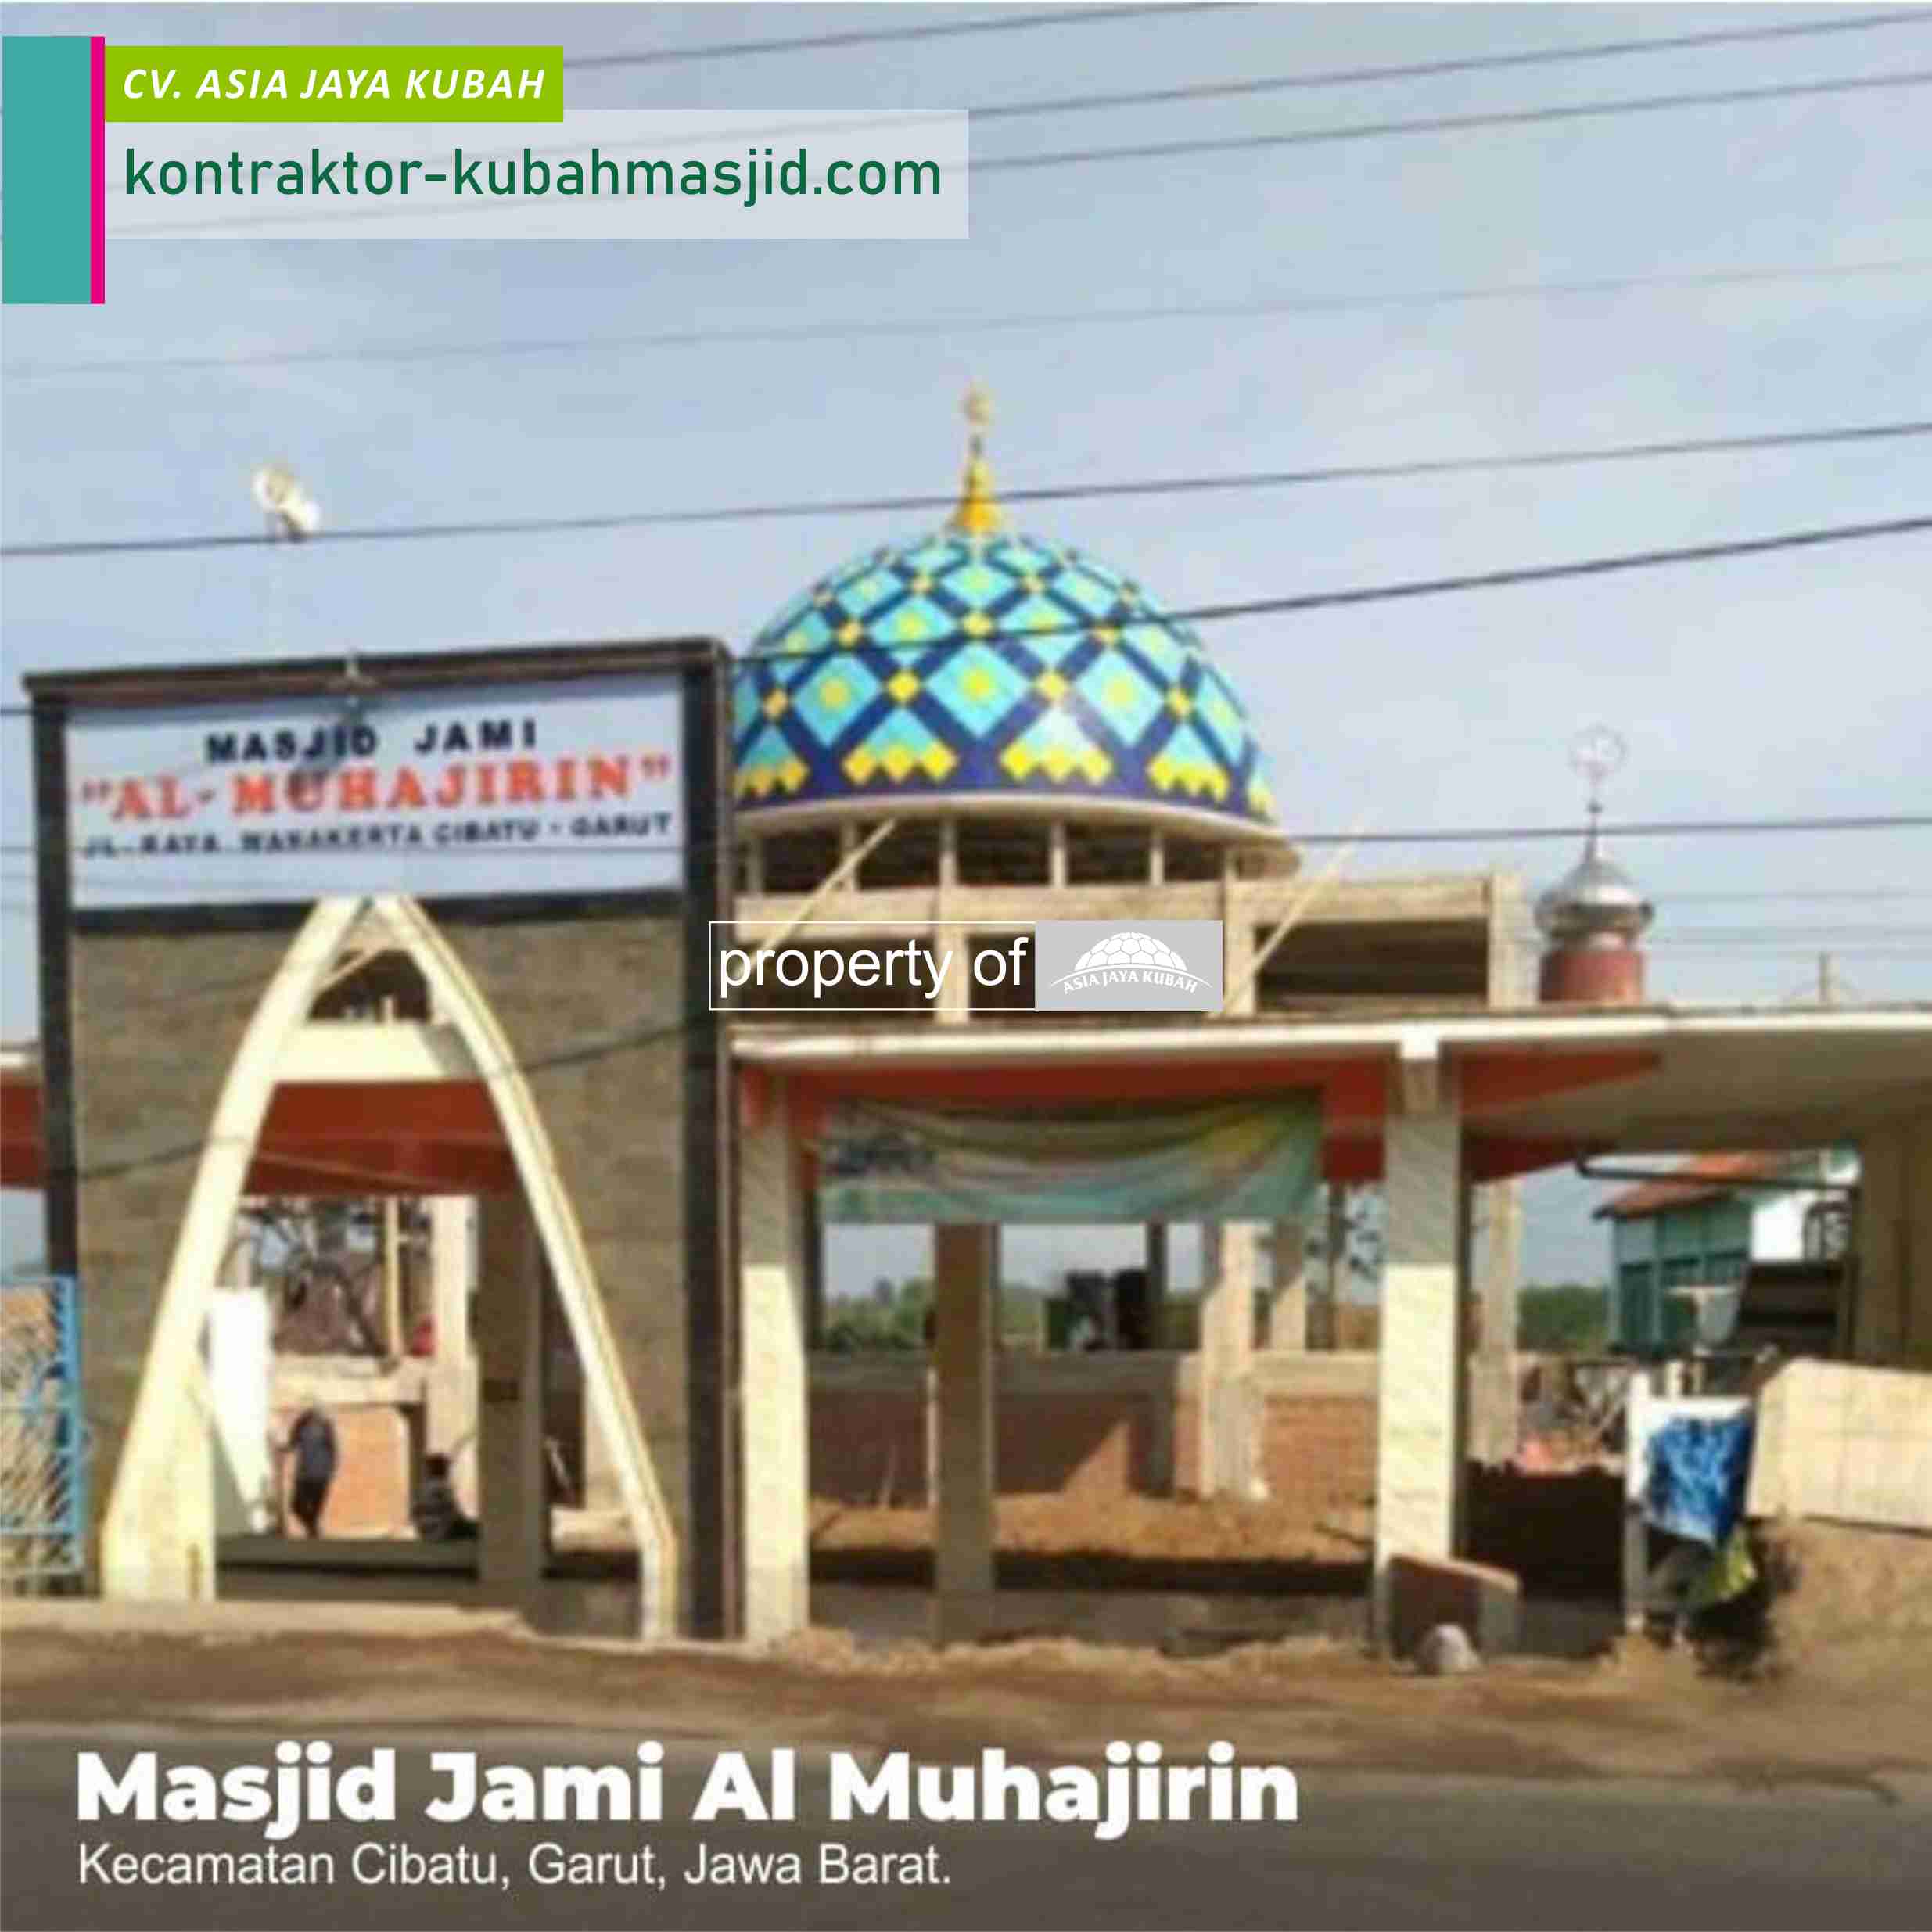 Harga Kubah Masjid Enamel 2020 di Pekanbaru